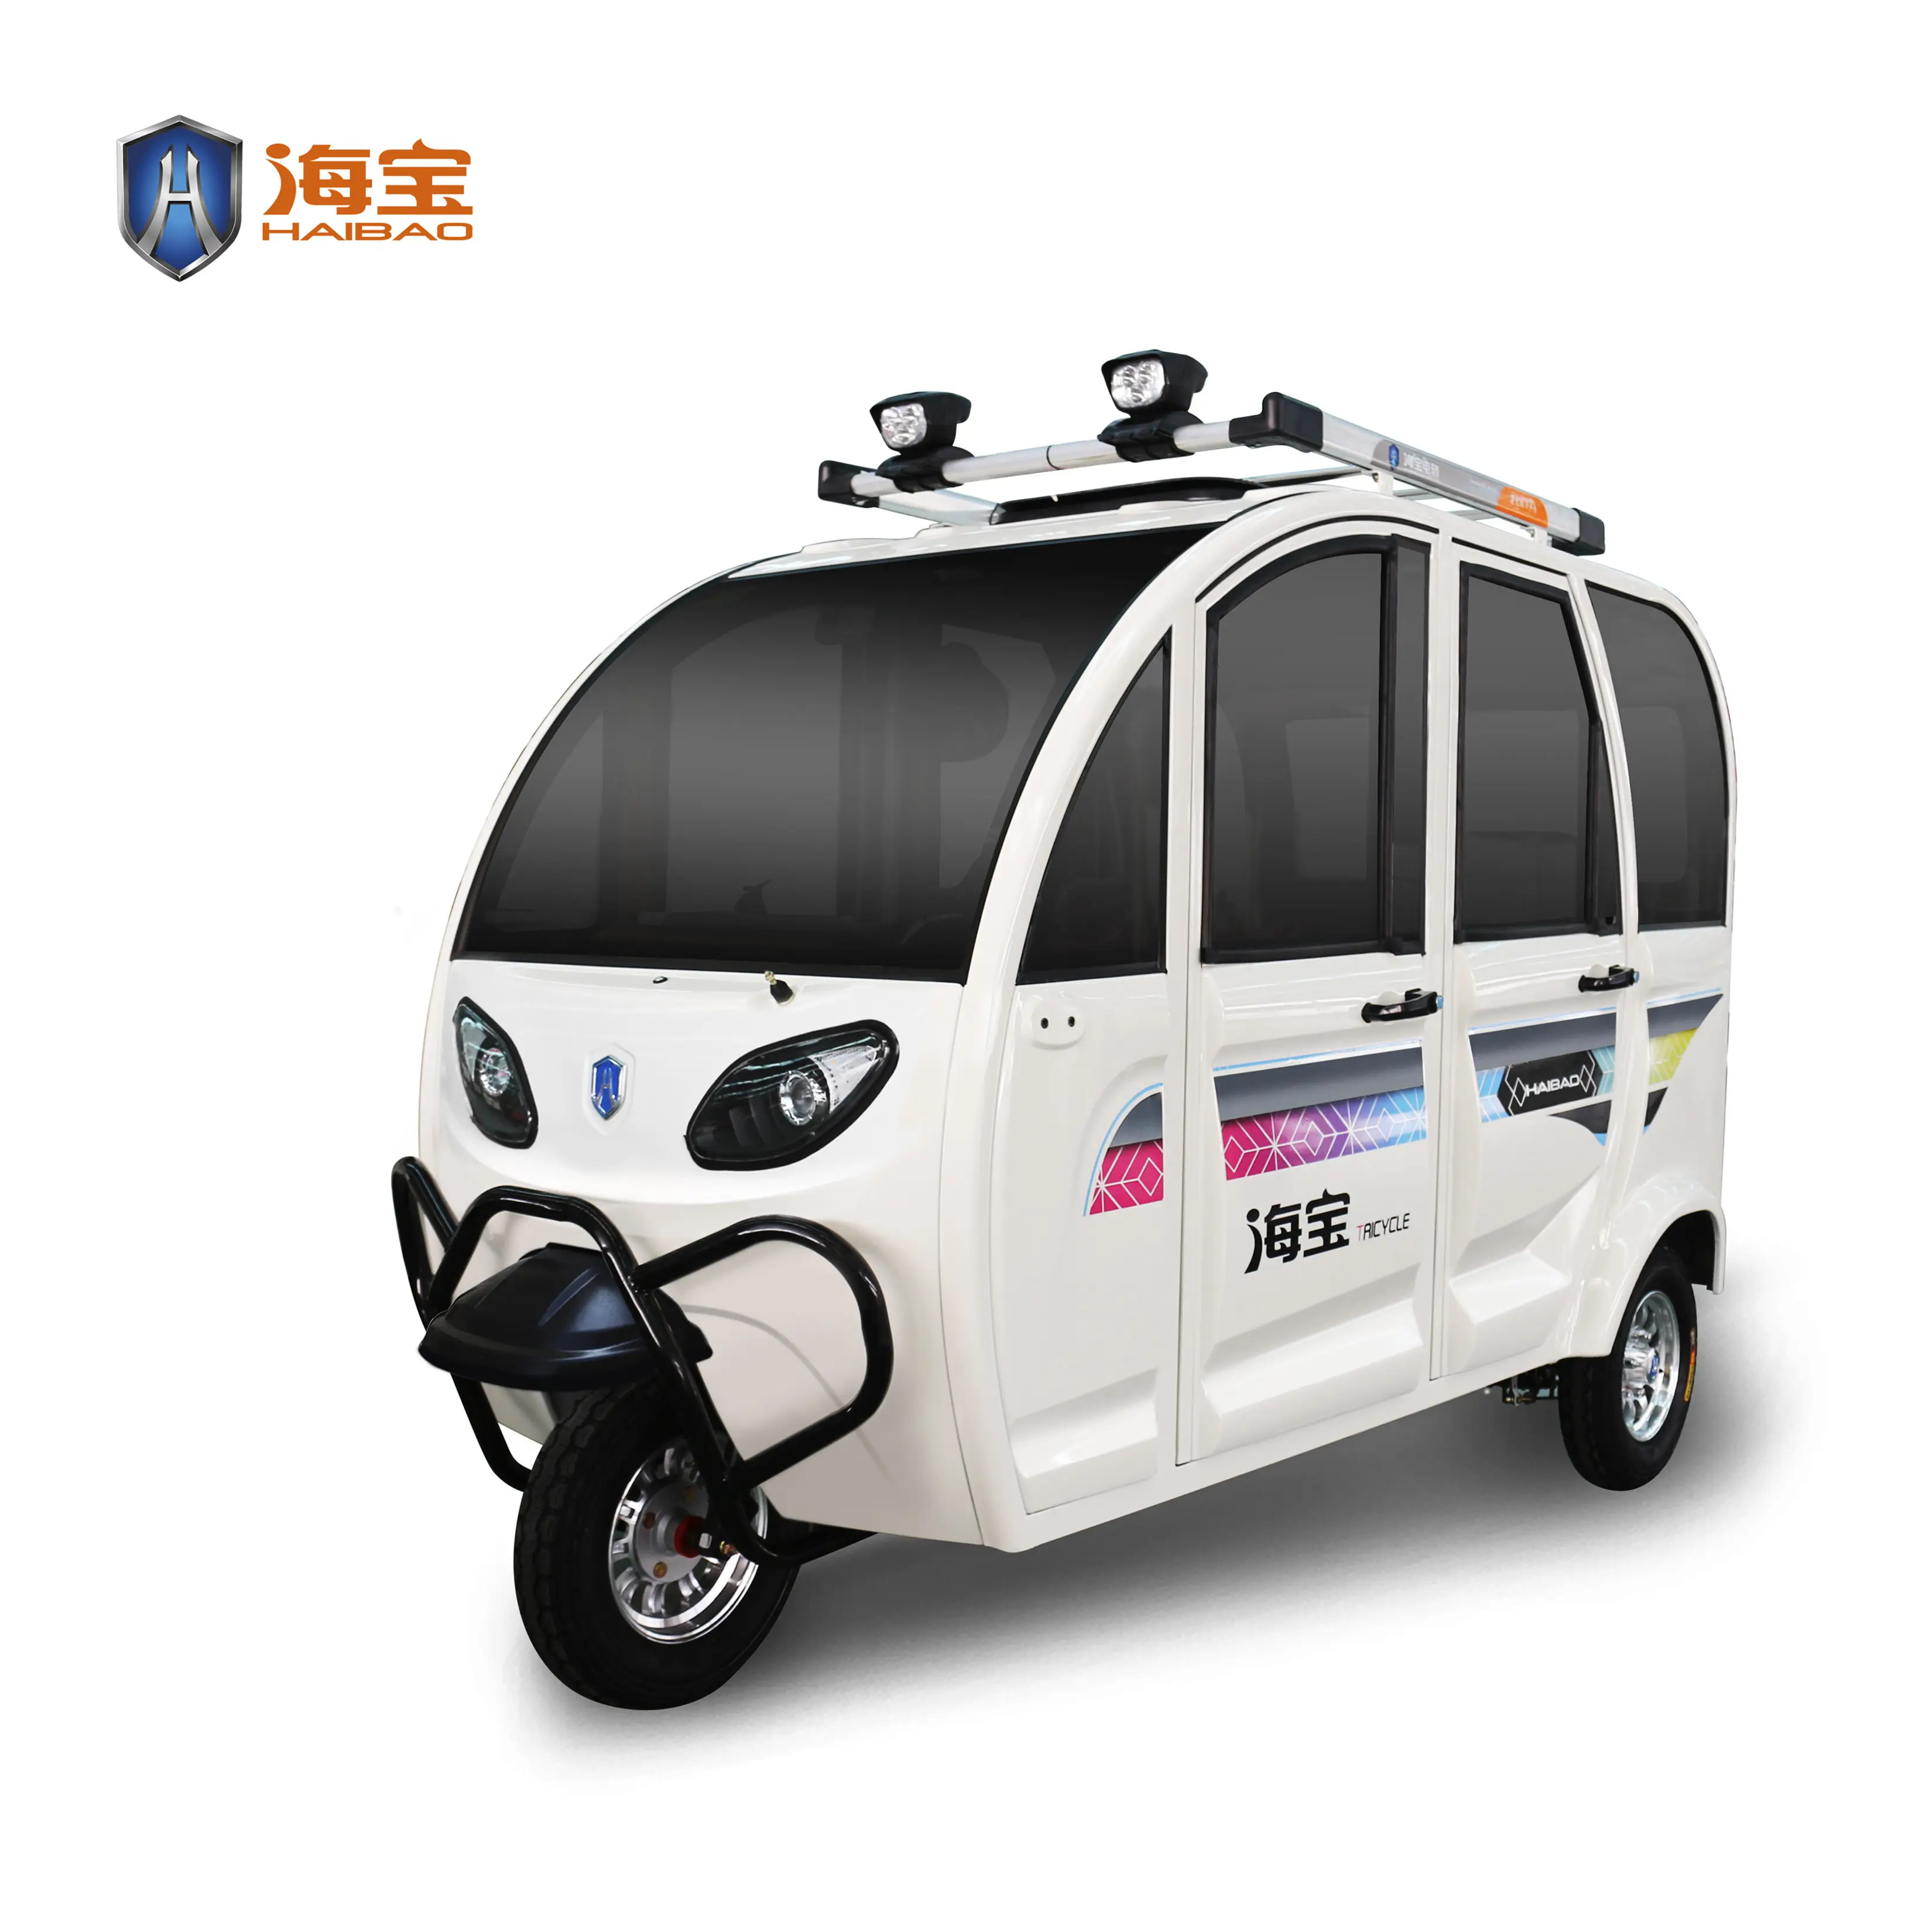 Новая энергия авто рикша 3 колеса автомобиля 2020 горячая Распродажа низкие цены и более дешевую и удобный Электрический tuktuk